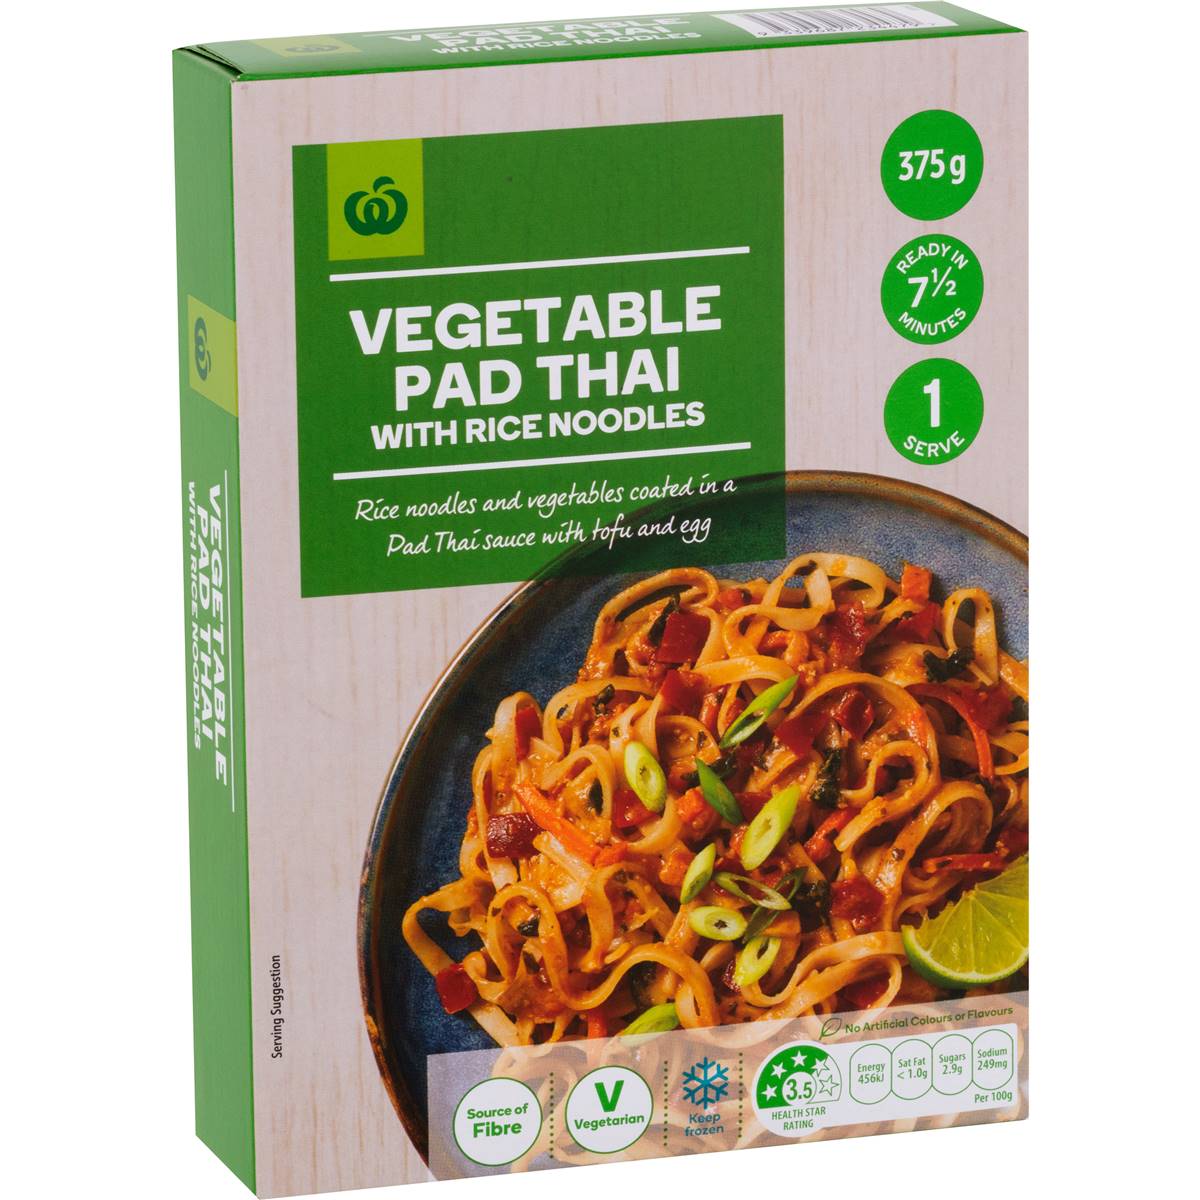 Calories in Woolworths Vegetable Pad Thai